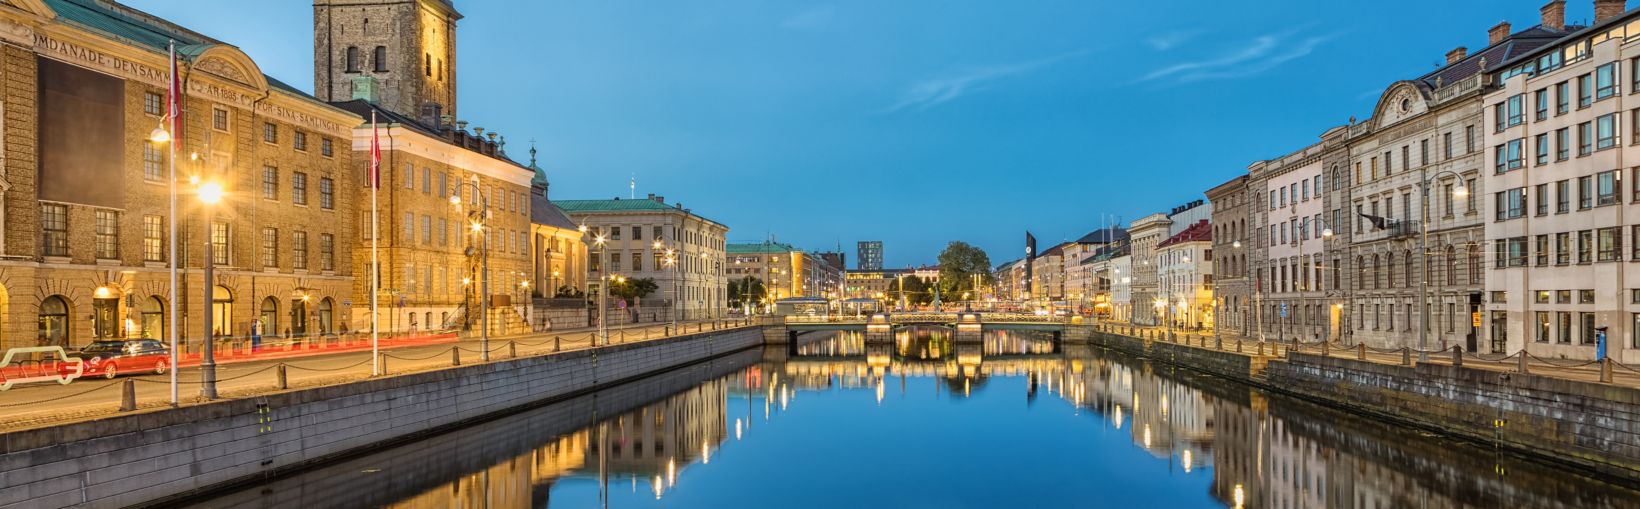 Kaupunkimaisema, jossa näkyvät suuri satamakanava ja saksalainen kirkko (Christinae kyrka) iltahämärässä Göteborgissa Ruotsissa.